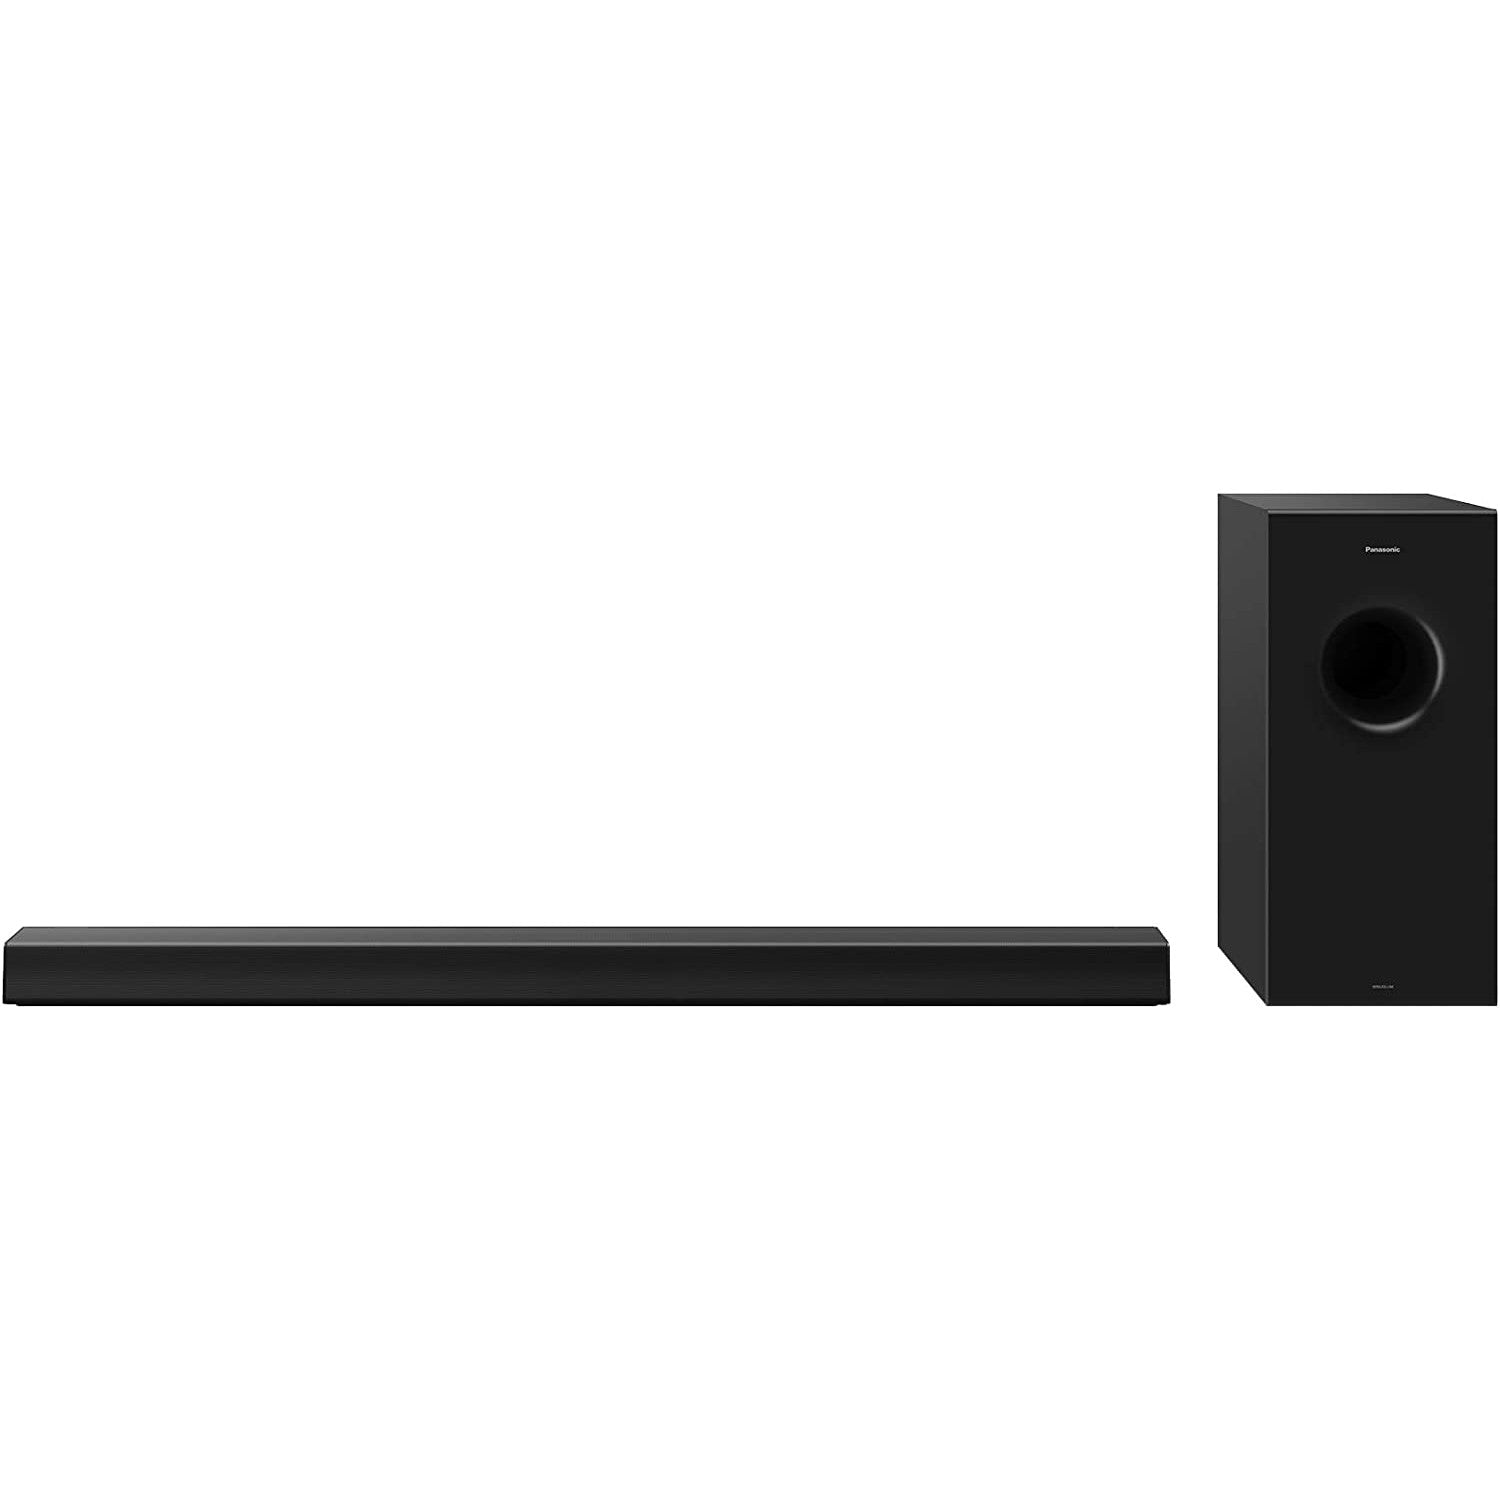 Panasonic SC-HTB600 Soundbar with Speaker - Black - Refurbished Pristine